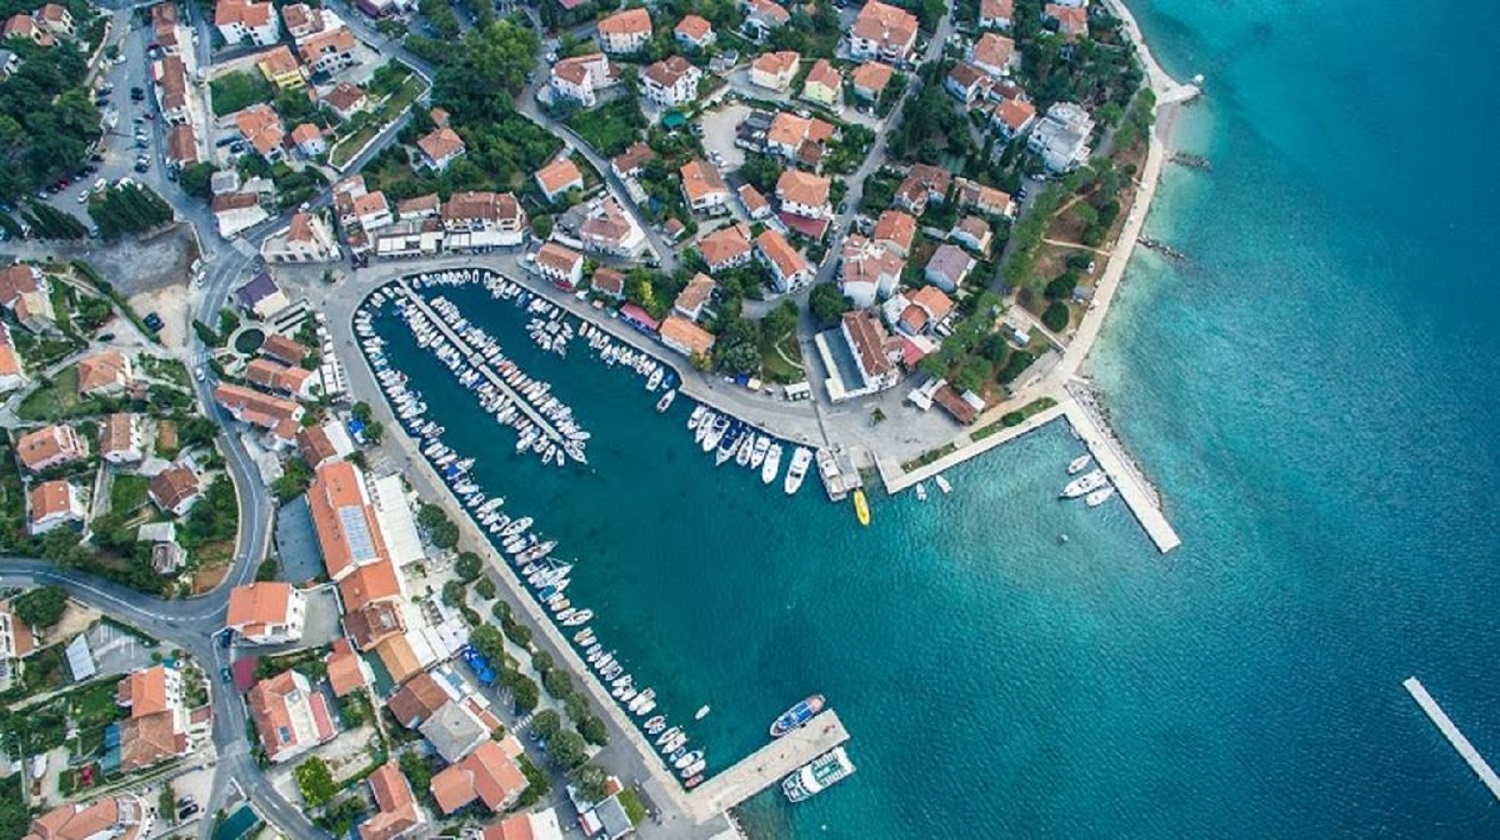 Ferienvilla mit Pool in Kroatien, Blick auf Malinska aus der Vogelperspektive